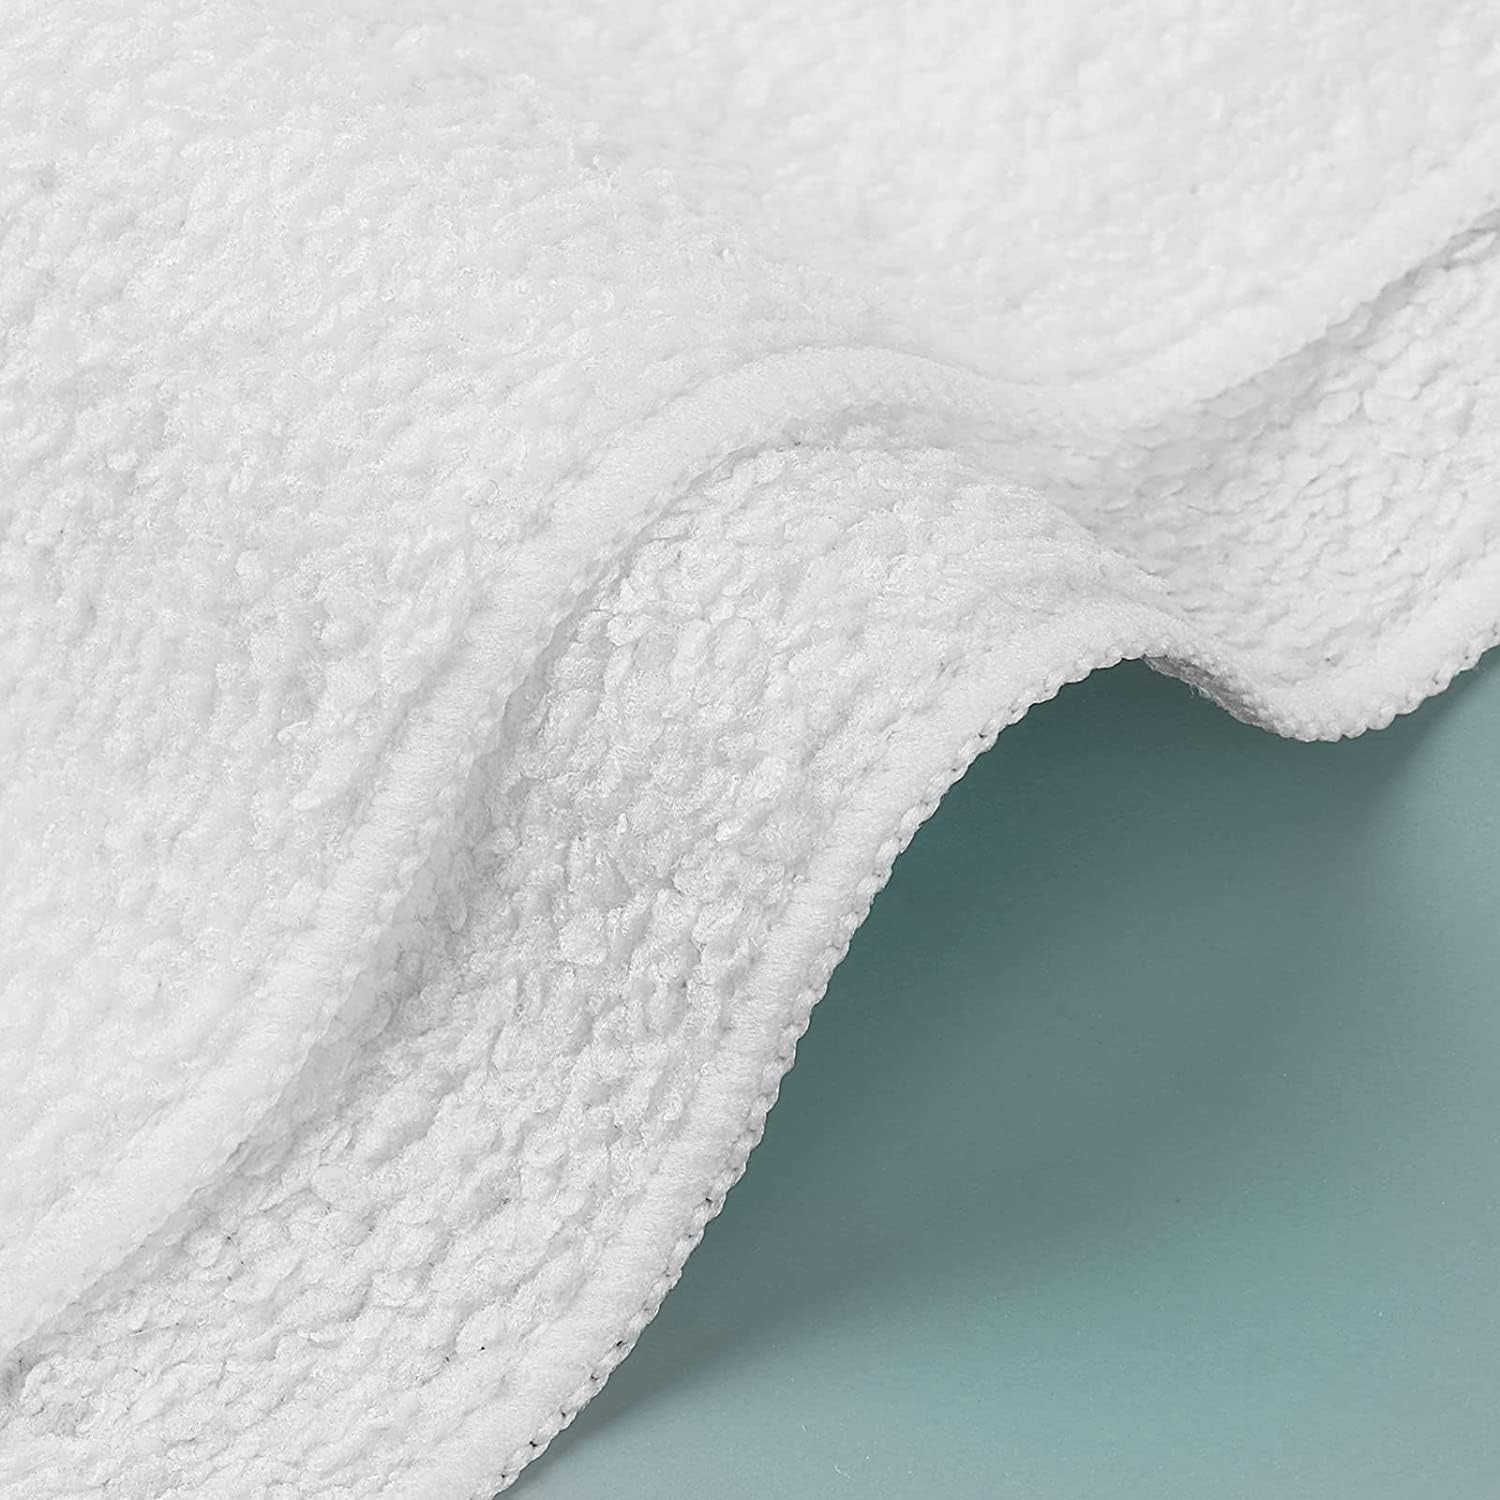 Juego de 50 toallas de microfibra, altamente absorbentes y suaves, paño de